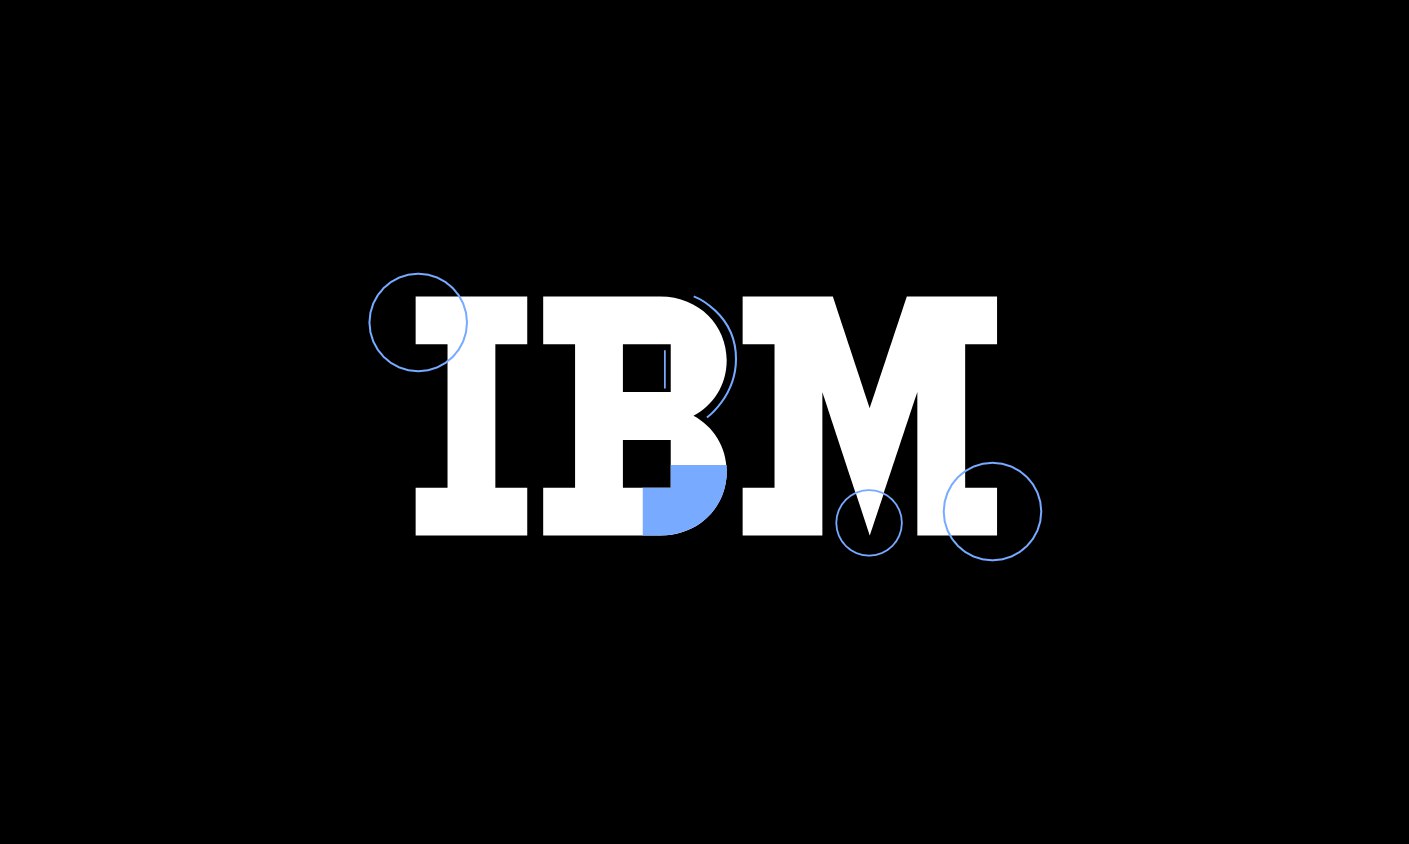 Шрифт ibm plex. IBM шрифт. IBM Plex. IBM Plex mono шрифты кириллица. IBM logo кириллица.